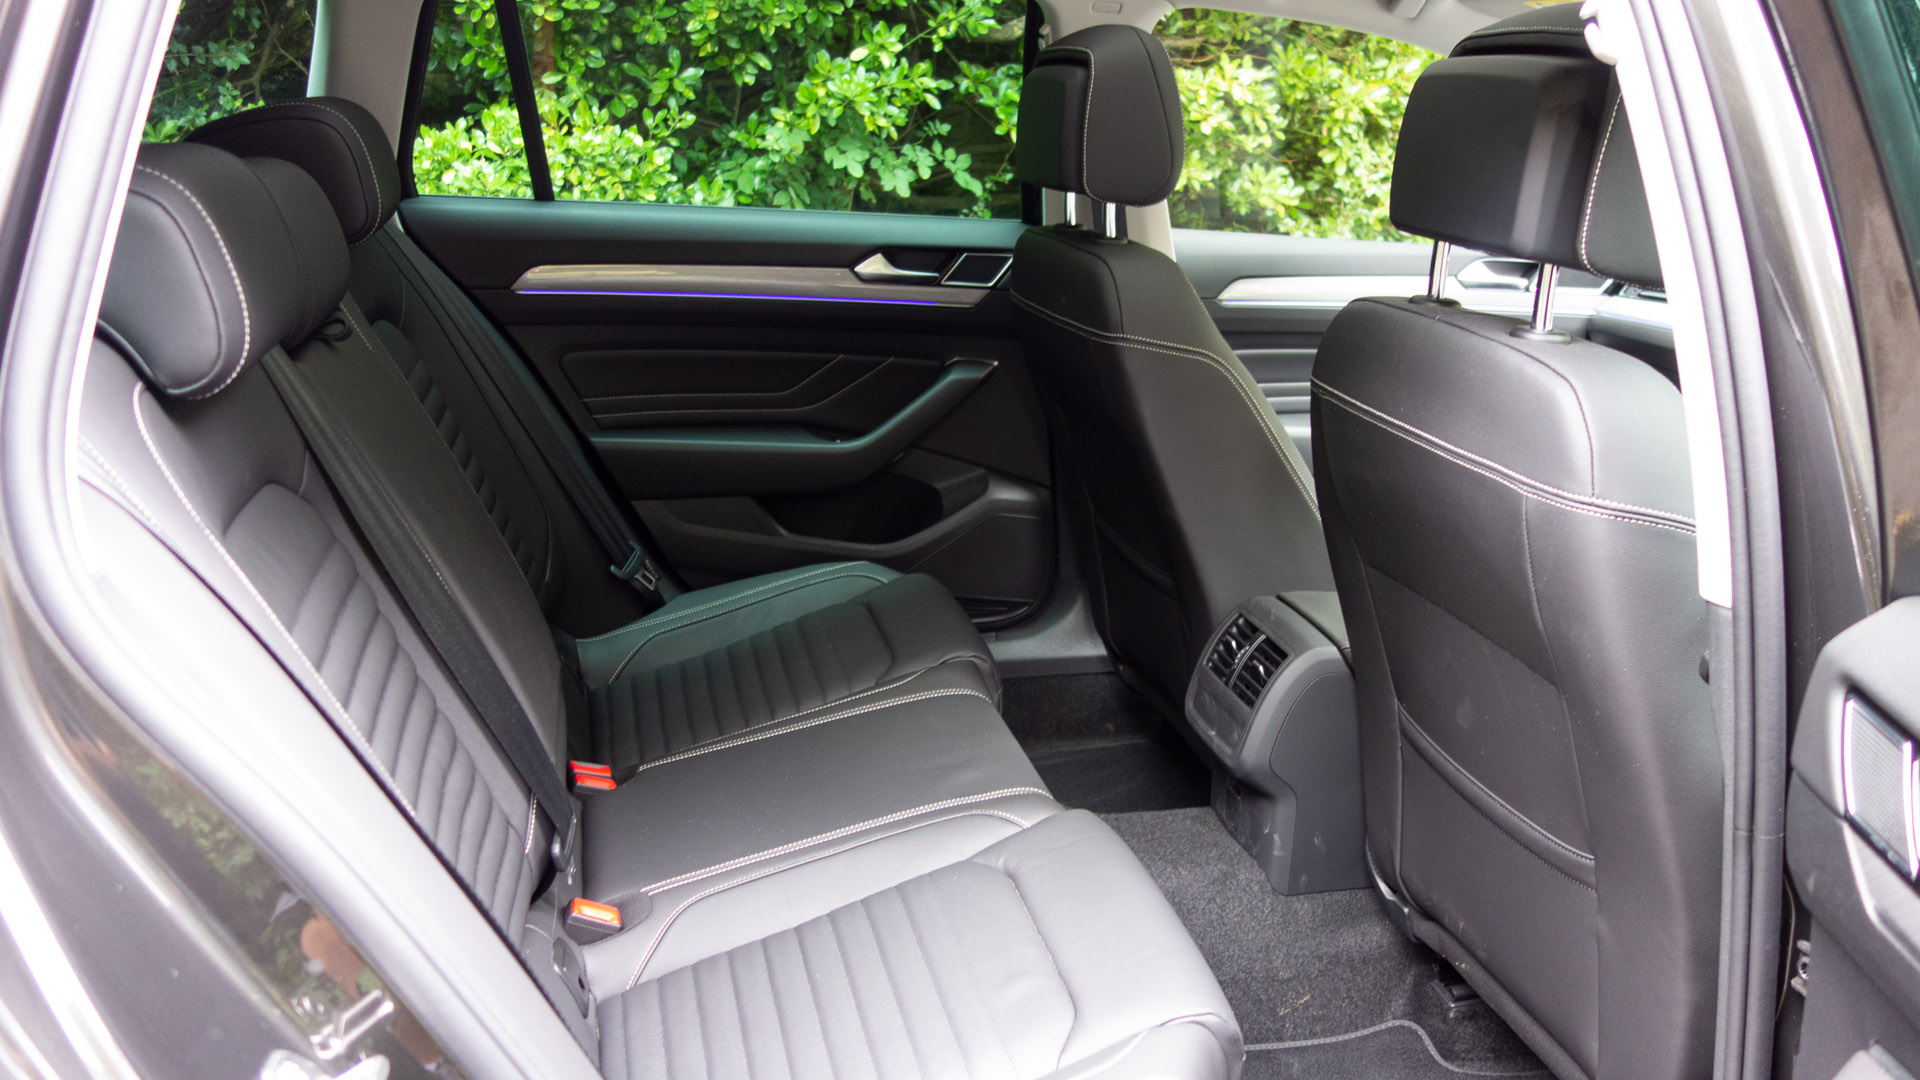 Volkswagen Passat Estate GTE rear seat